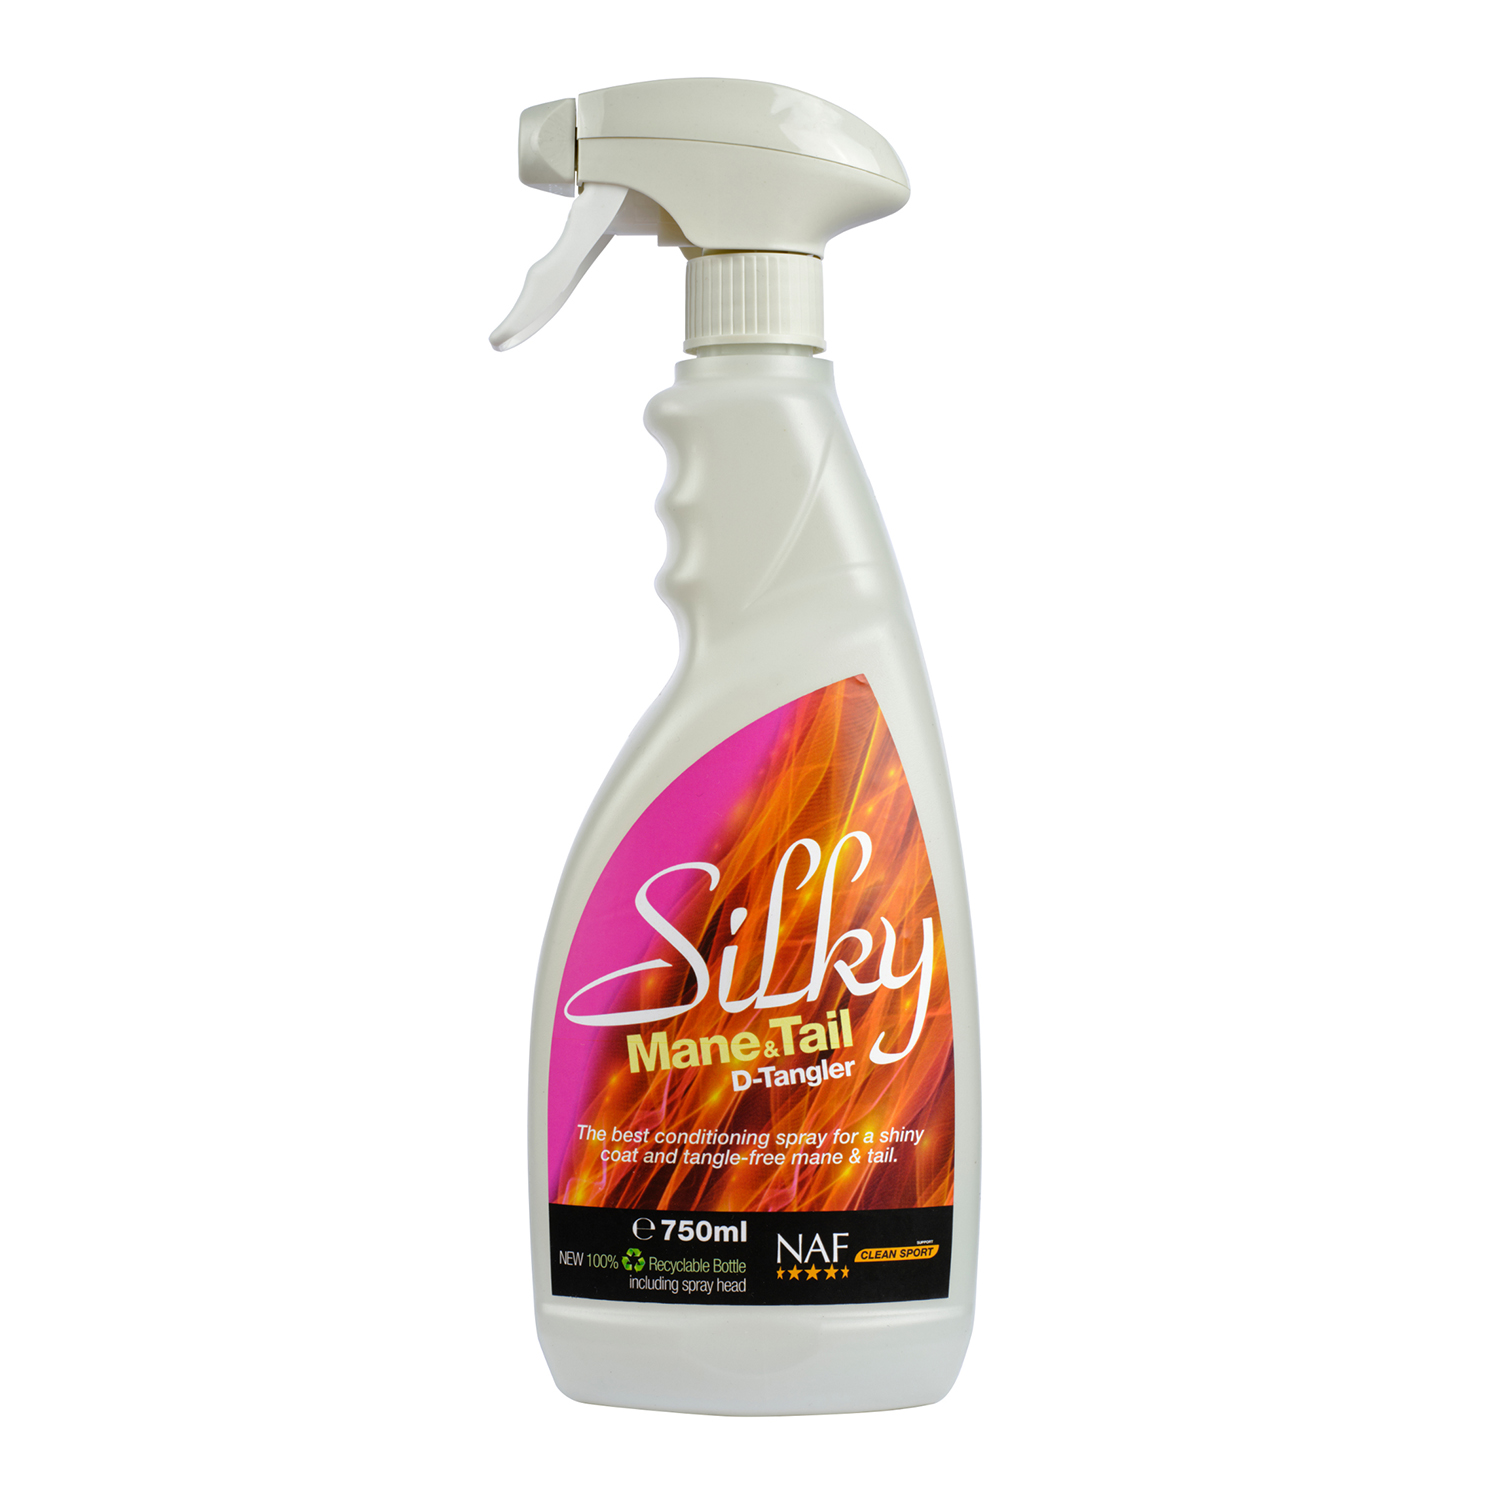 Silky mane & tail spray